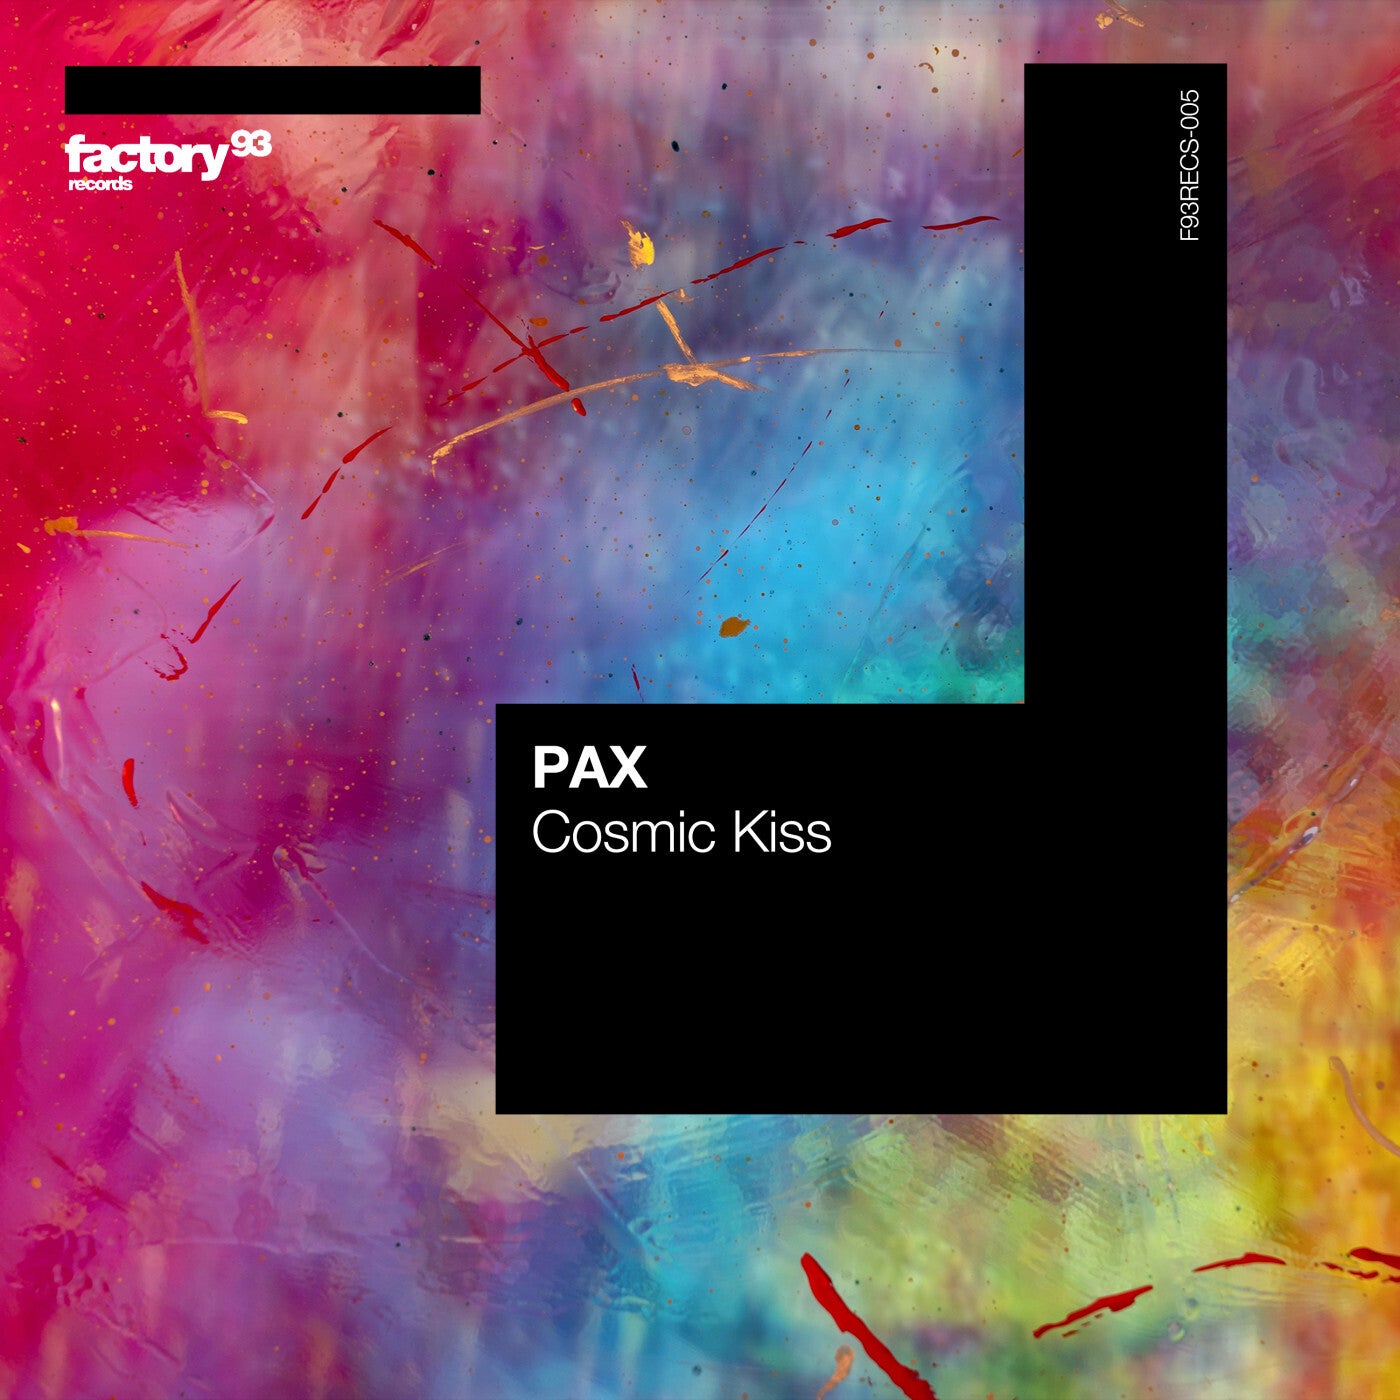 PAX - Cosmic Kiss [F93RECS005B]